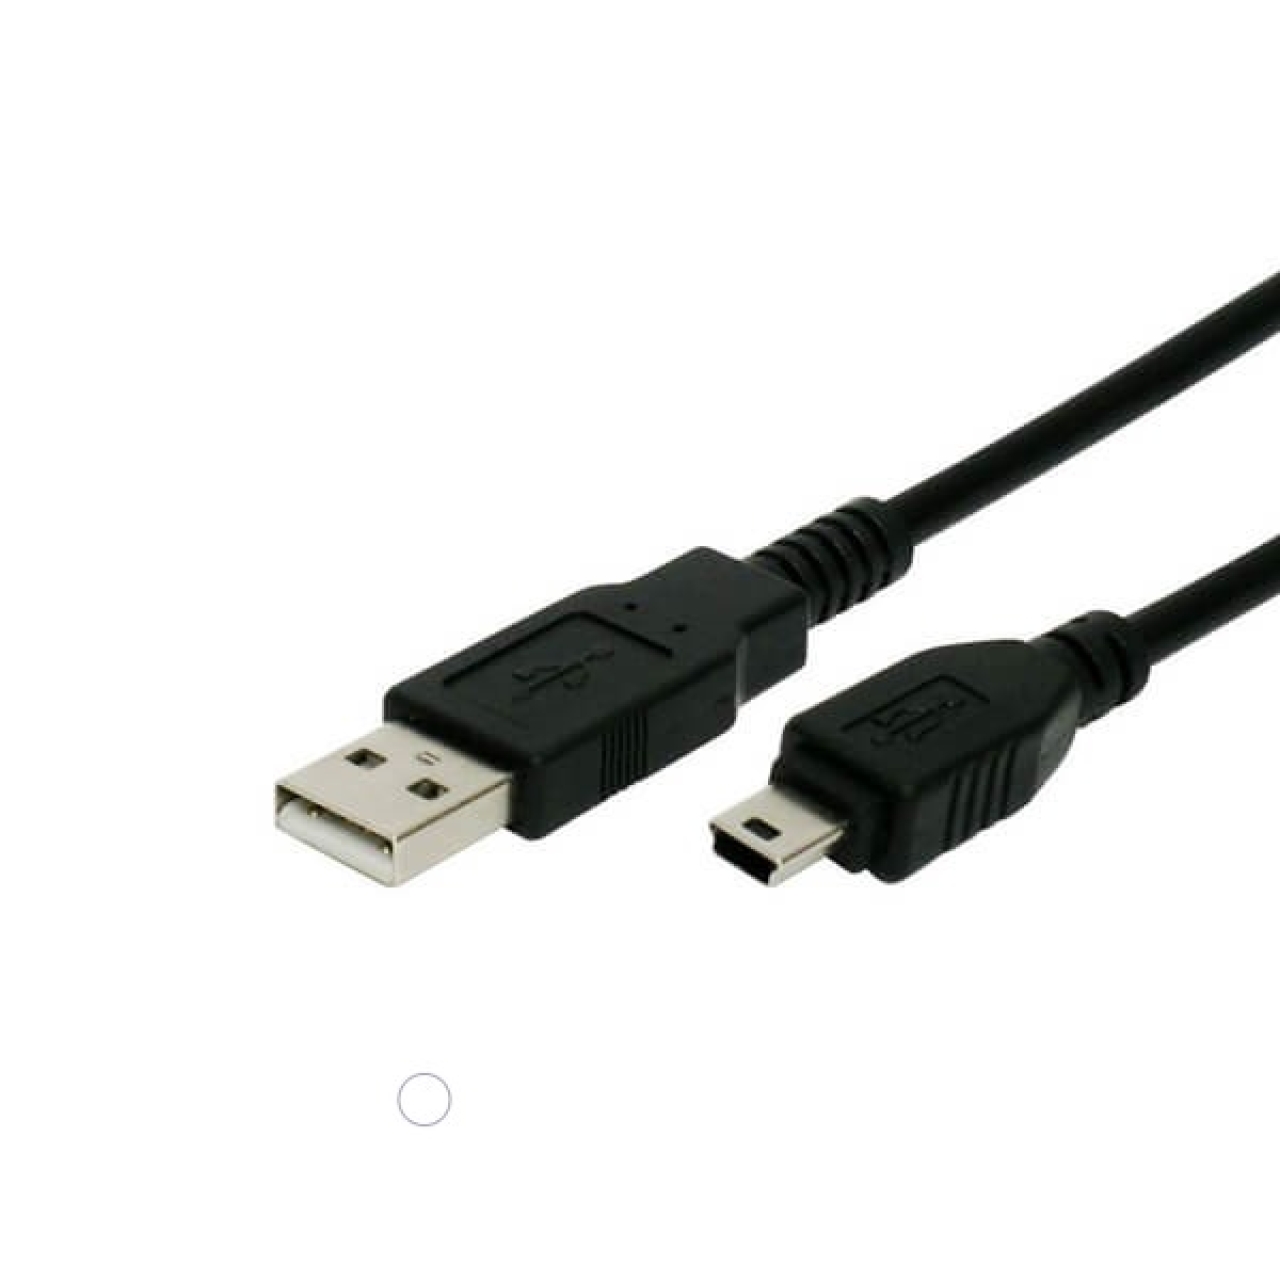 کابل تبدیل USB به Mini USB گریت مدل AM-Mini طول 1.5 متر